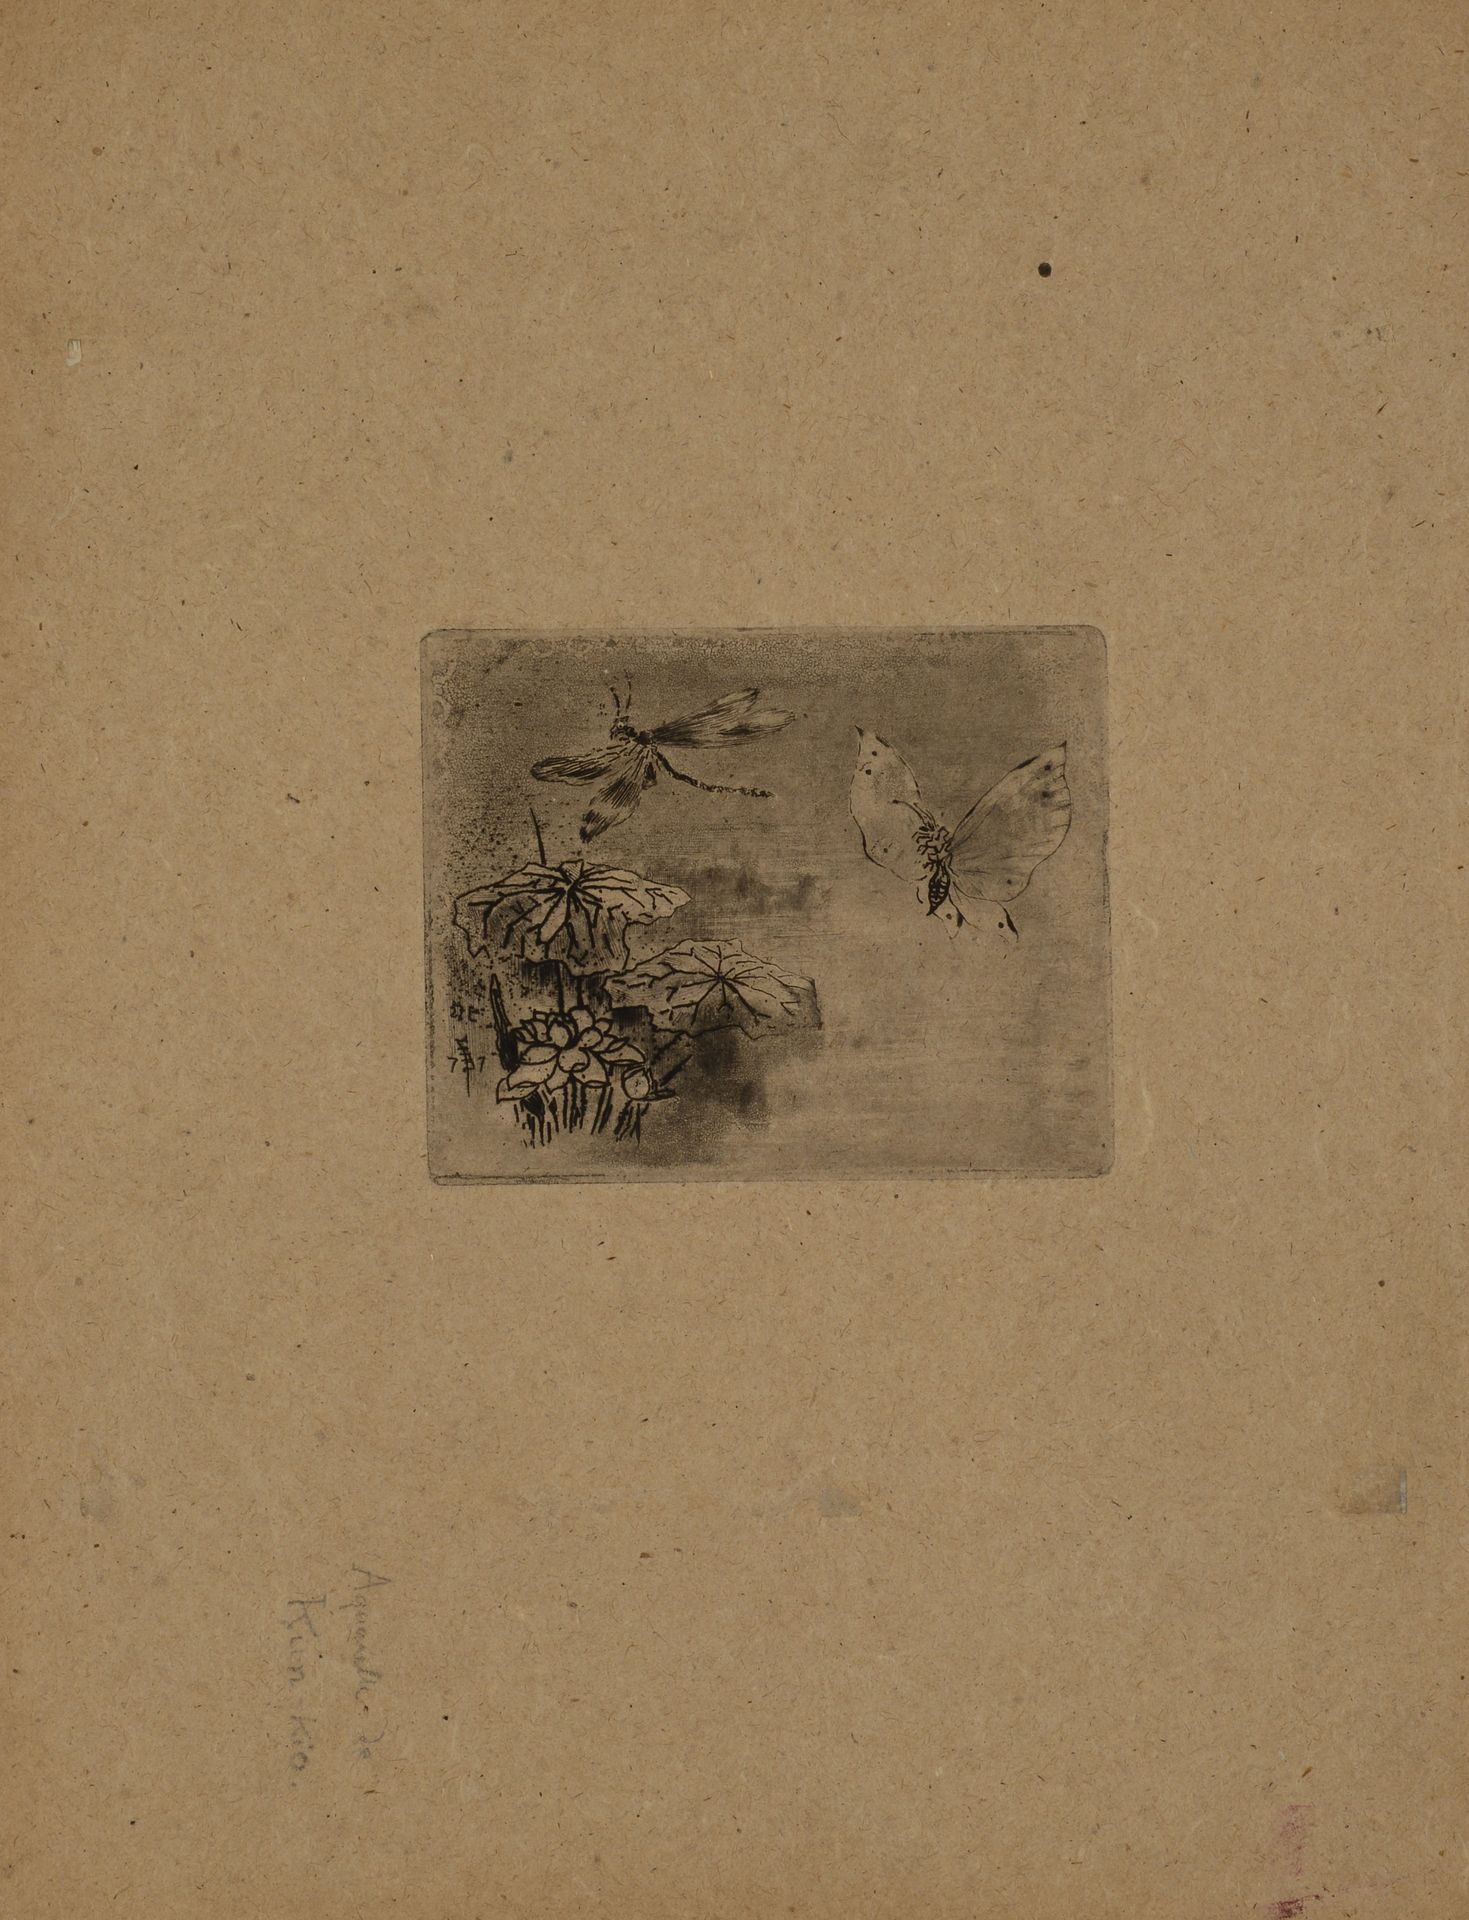 Null 费利克斯-布霍特(1847-1898)的书印 蝴蝶和蜻蜓。来自Japonisme系列的板材。 蚀刻和水印。两份样书，一份在黄色剥落的纸上，添加了红色墨&hellip;